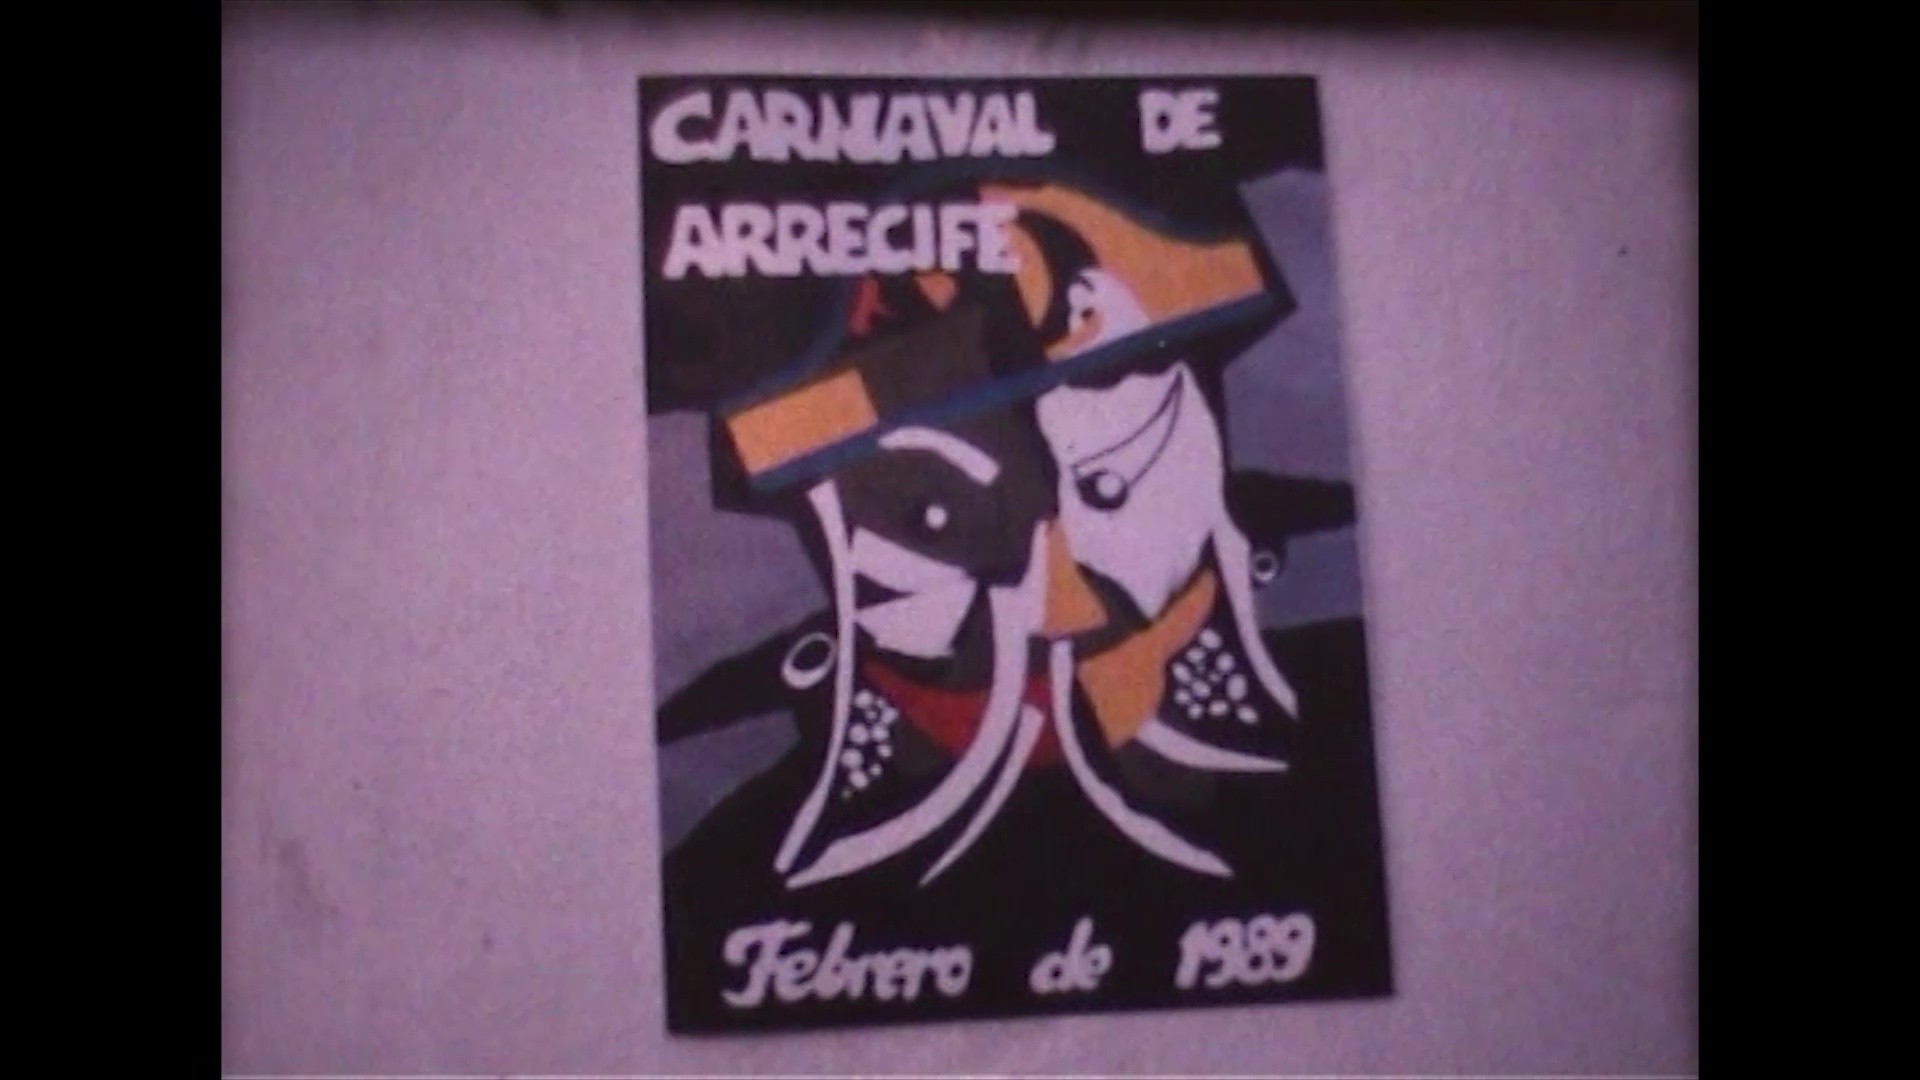 Coso del carnaval en Arrecife (1989)